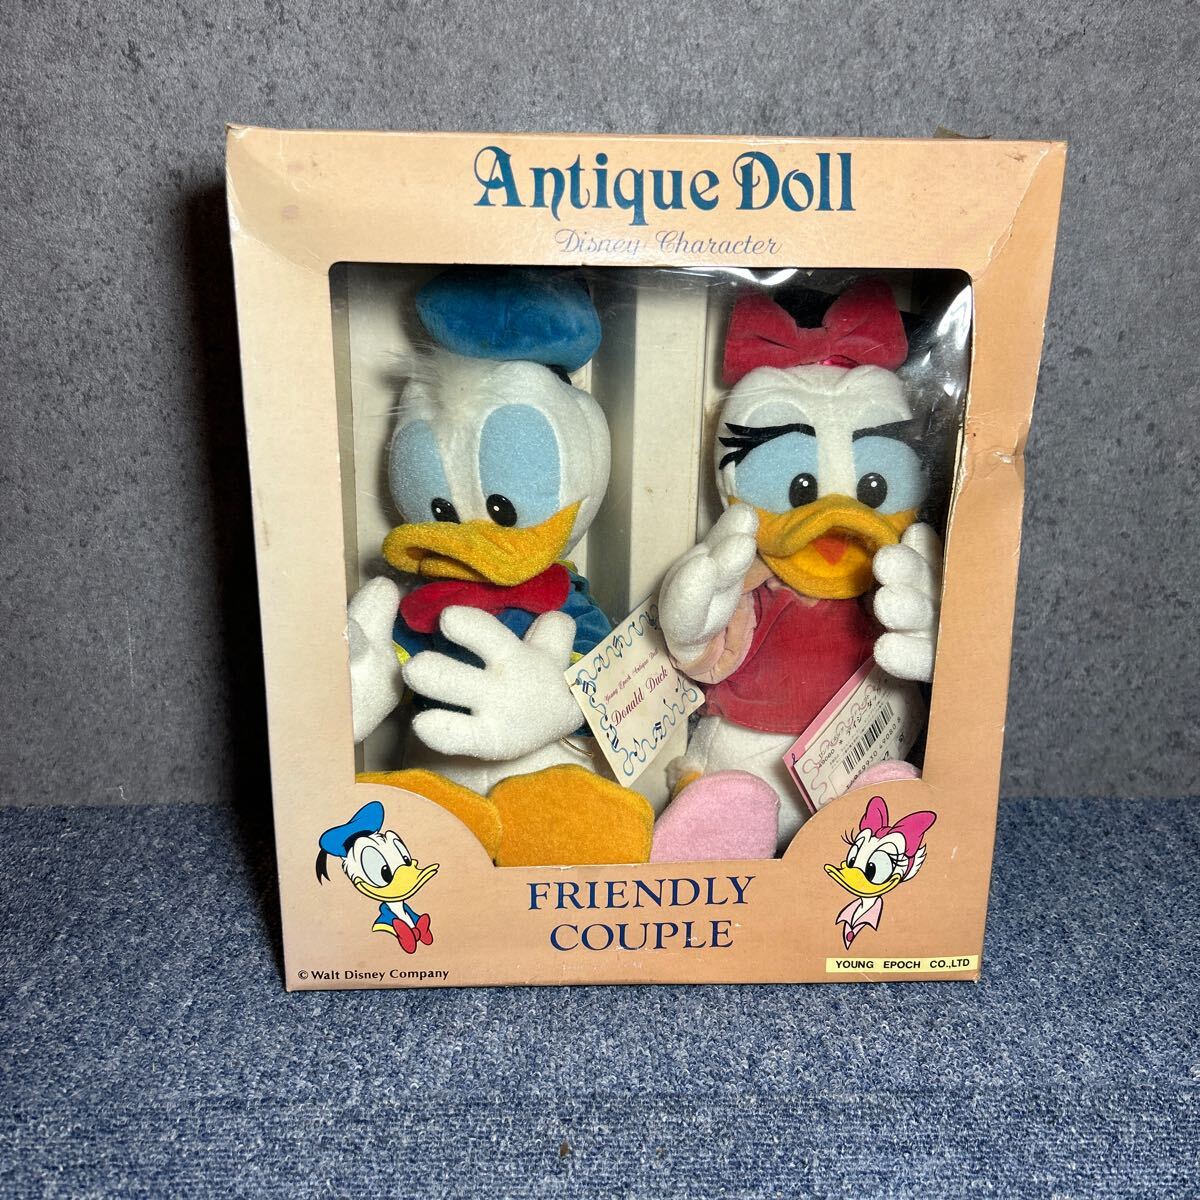 ディズニー Disney antique doll アンティークドール ディズニーキャラクター friendly couple ドナルドダック デイジーダック の画像1